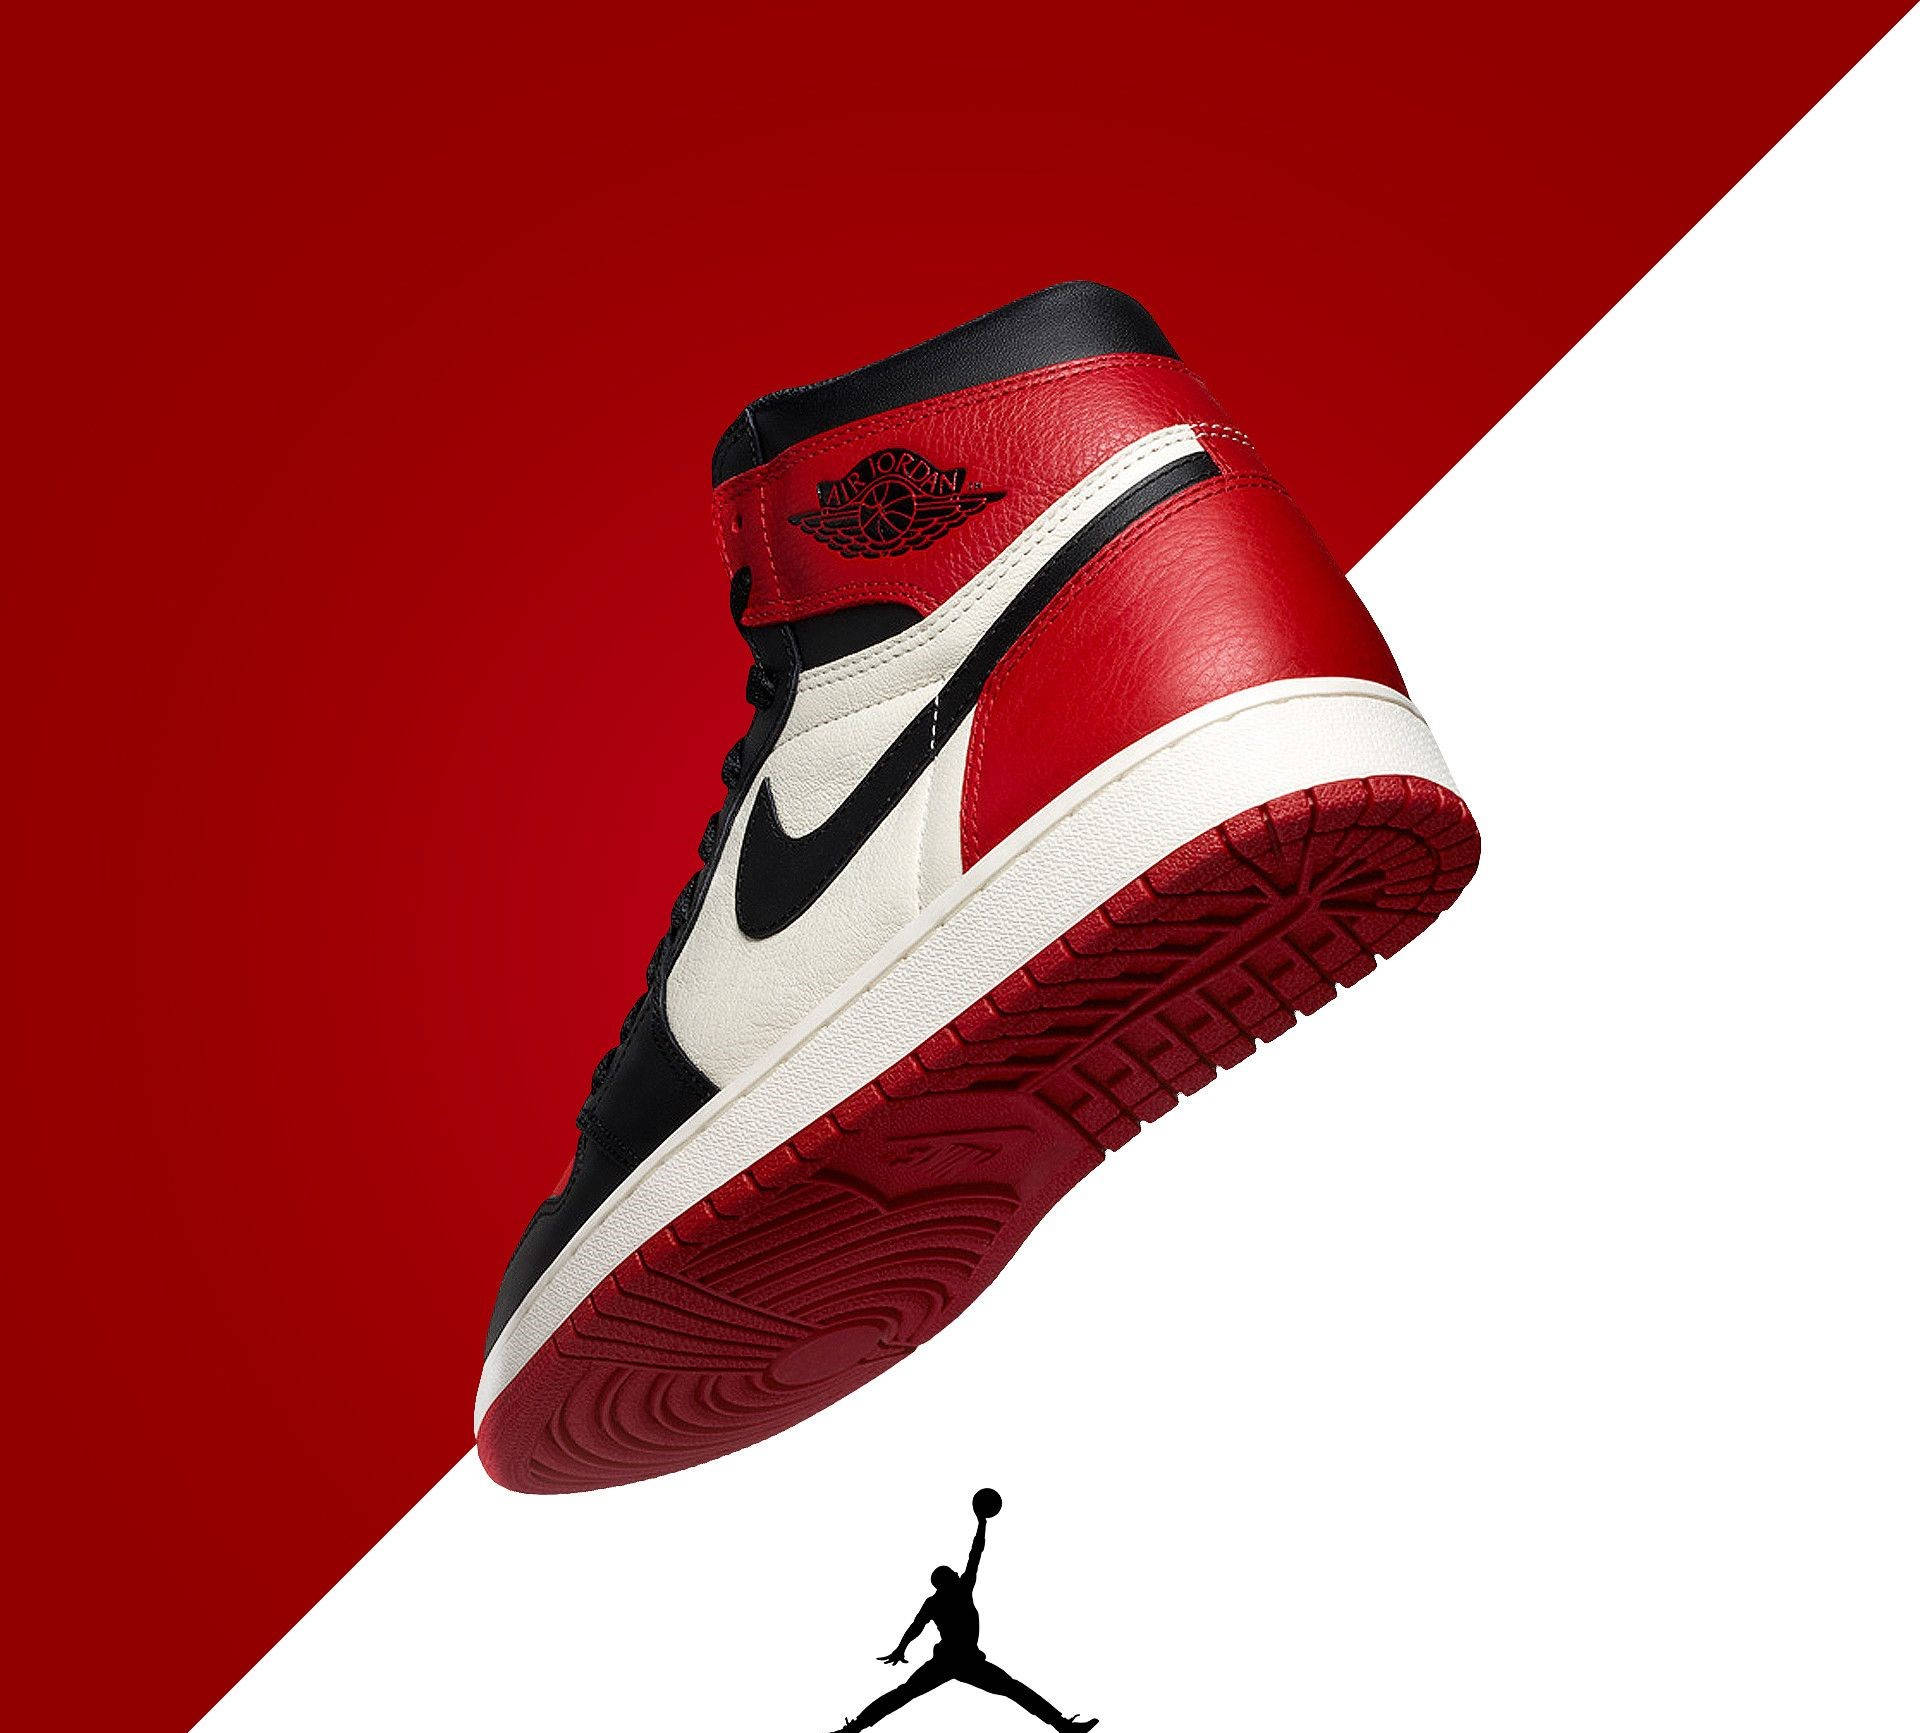 Red Nike Air Jordan Shoes Wallpaper